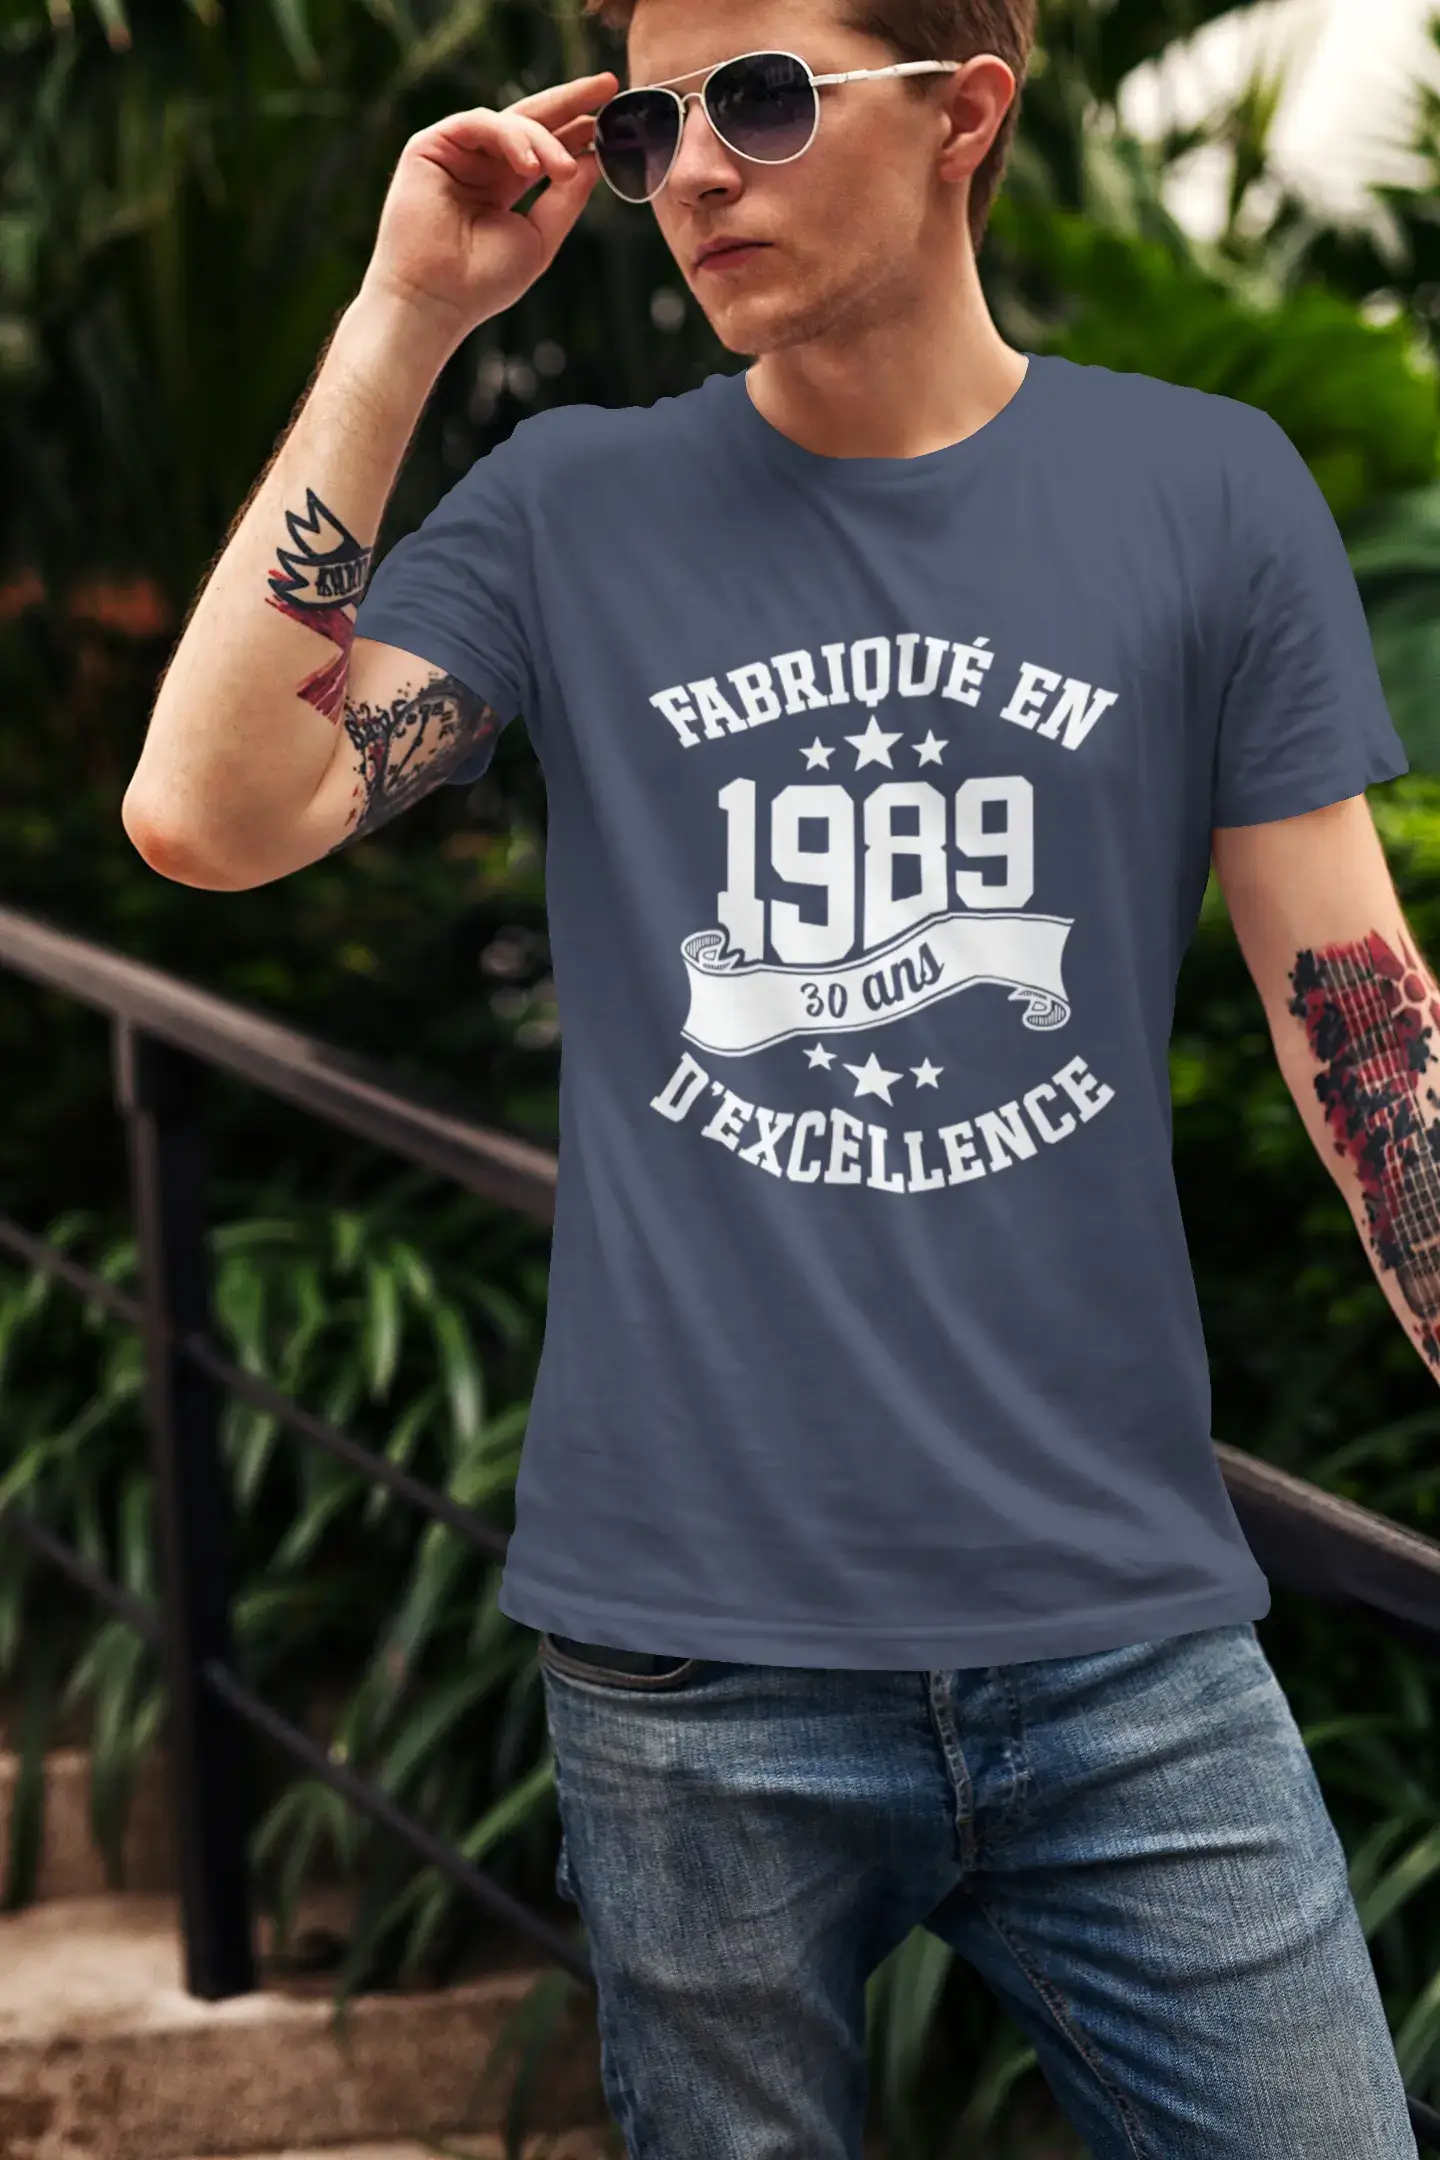 ULTRABASIC – Hergestellt im Jahr 1989, 30 Jahre alt. Geniales Unisex-T-Shirt aus weißem Chiné